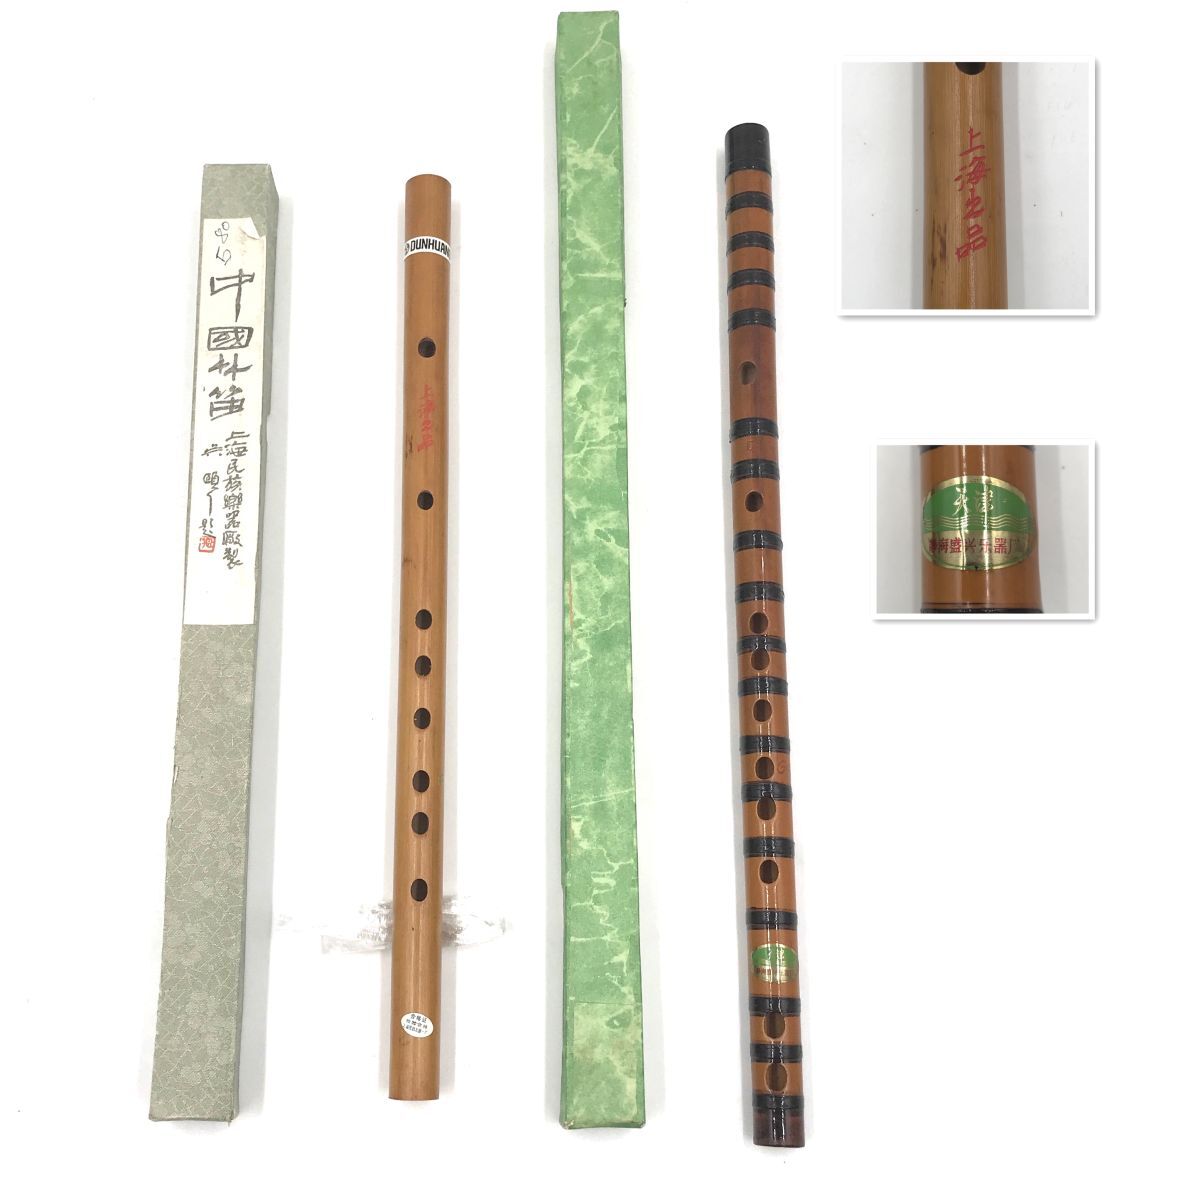 中国竹笛 2点 まとめて 竹笛 上海民族楽器 笛子 【312-102#80】の画像1